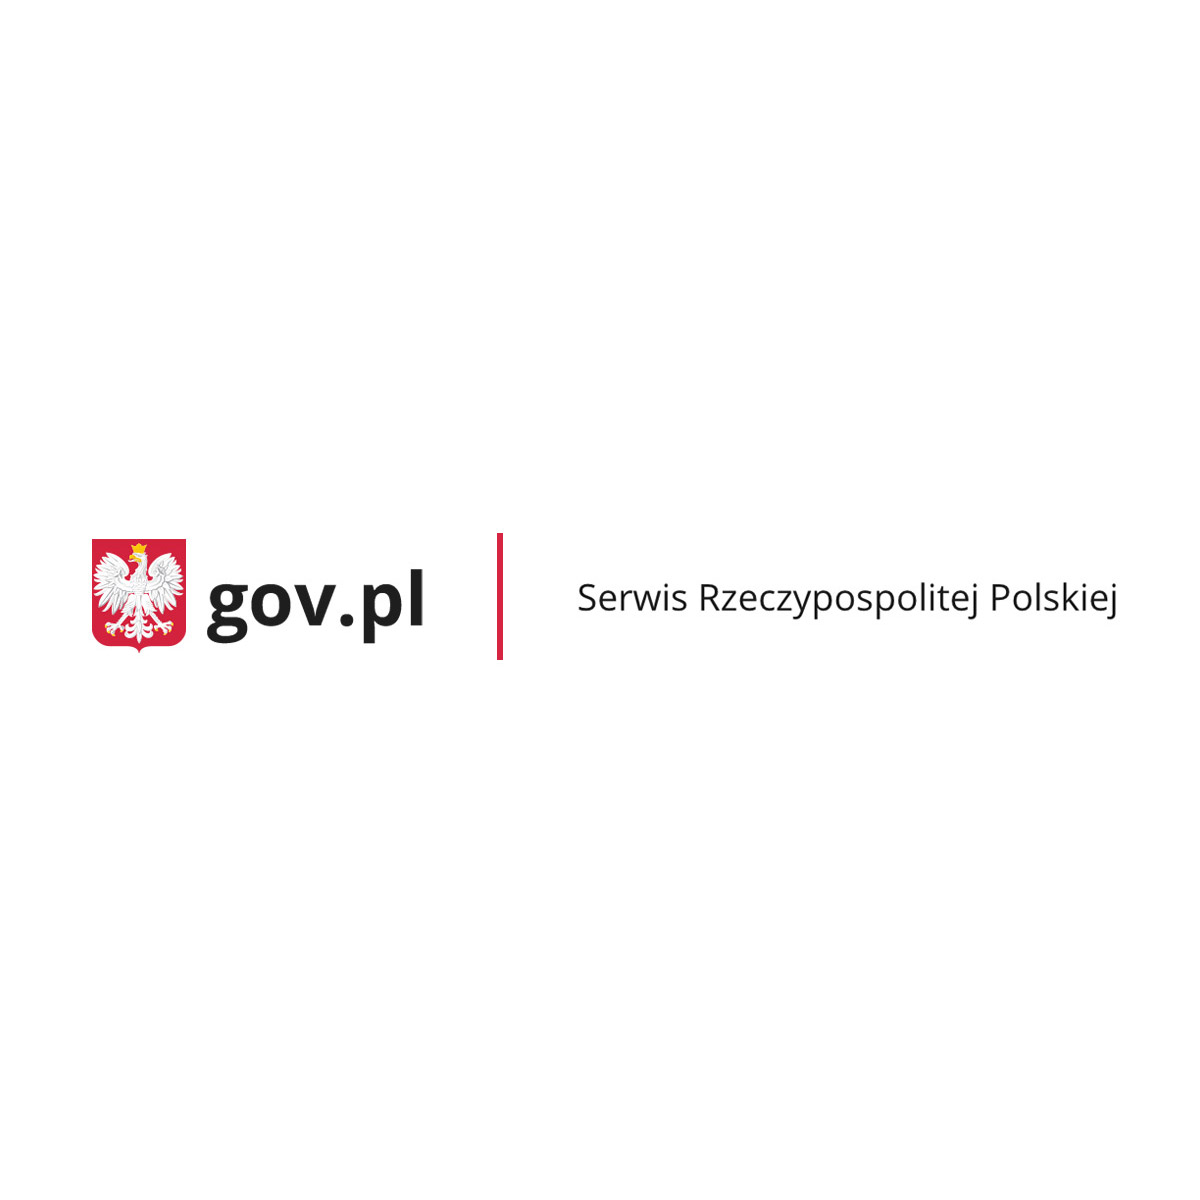 NAWA și OPI PIB împreună pentru Științe poloneze – Ministerul Educației și Științei